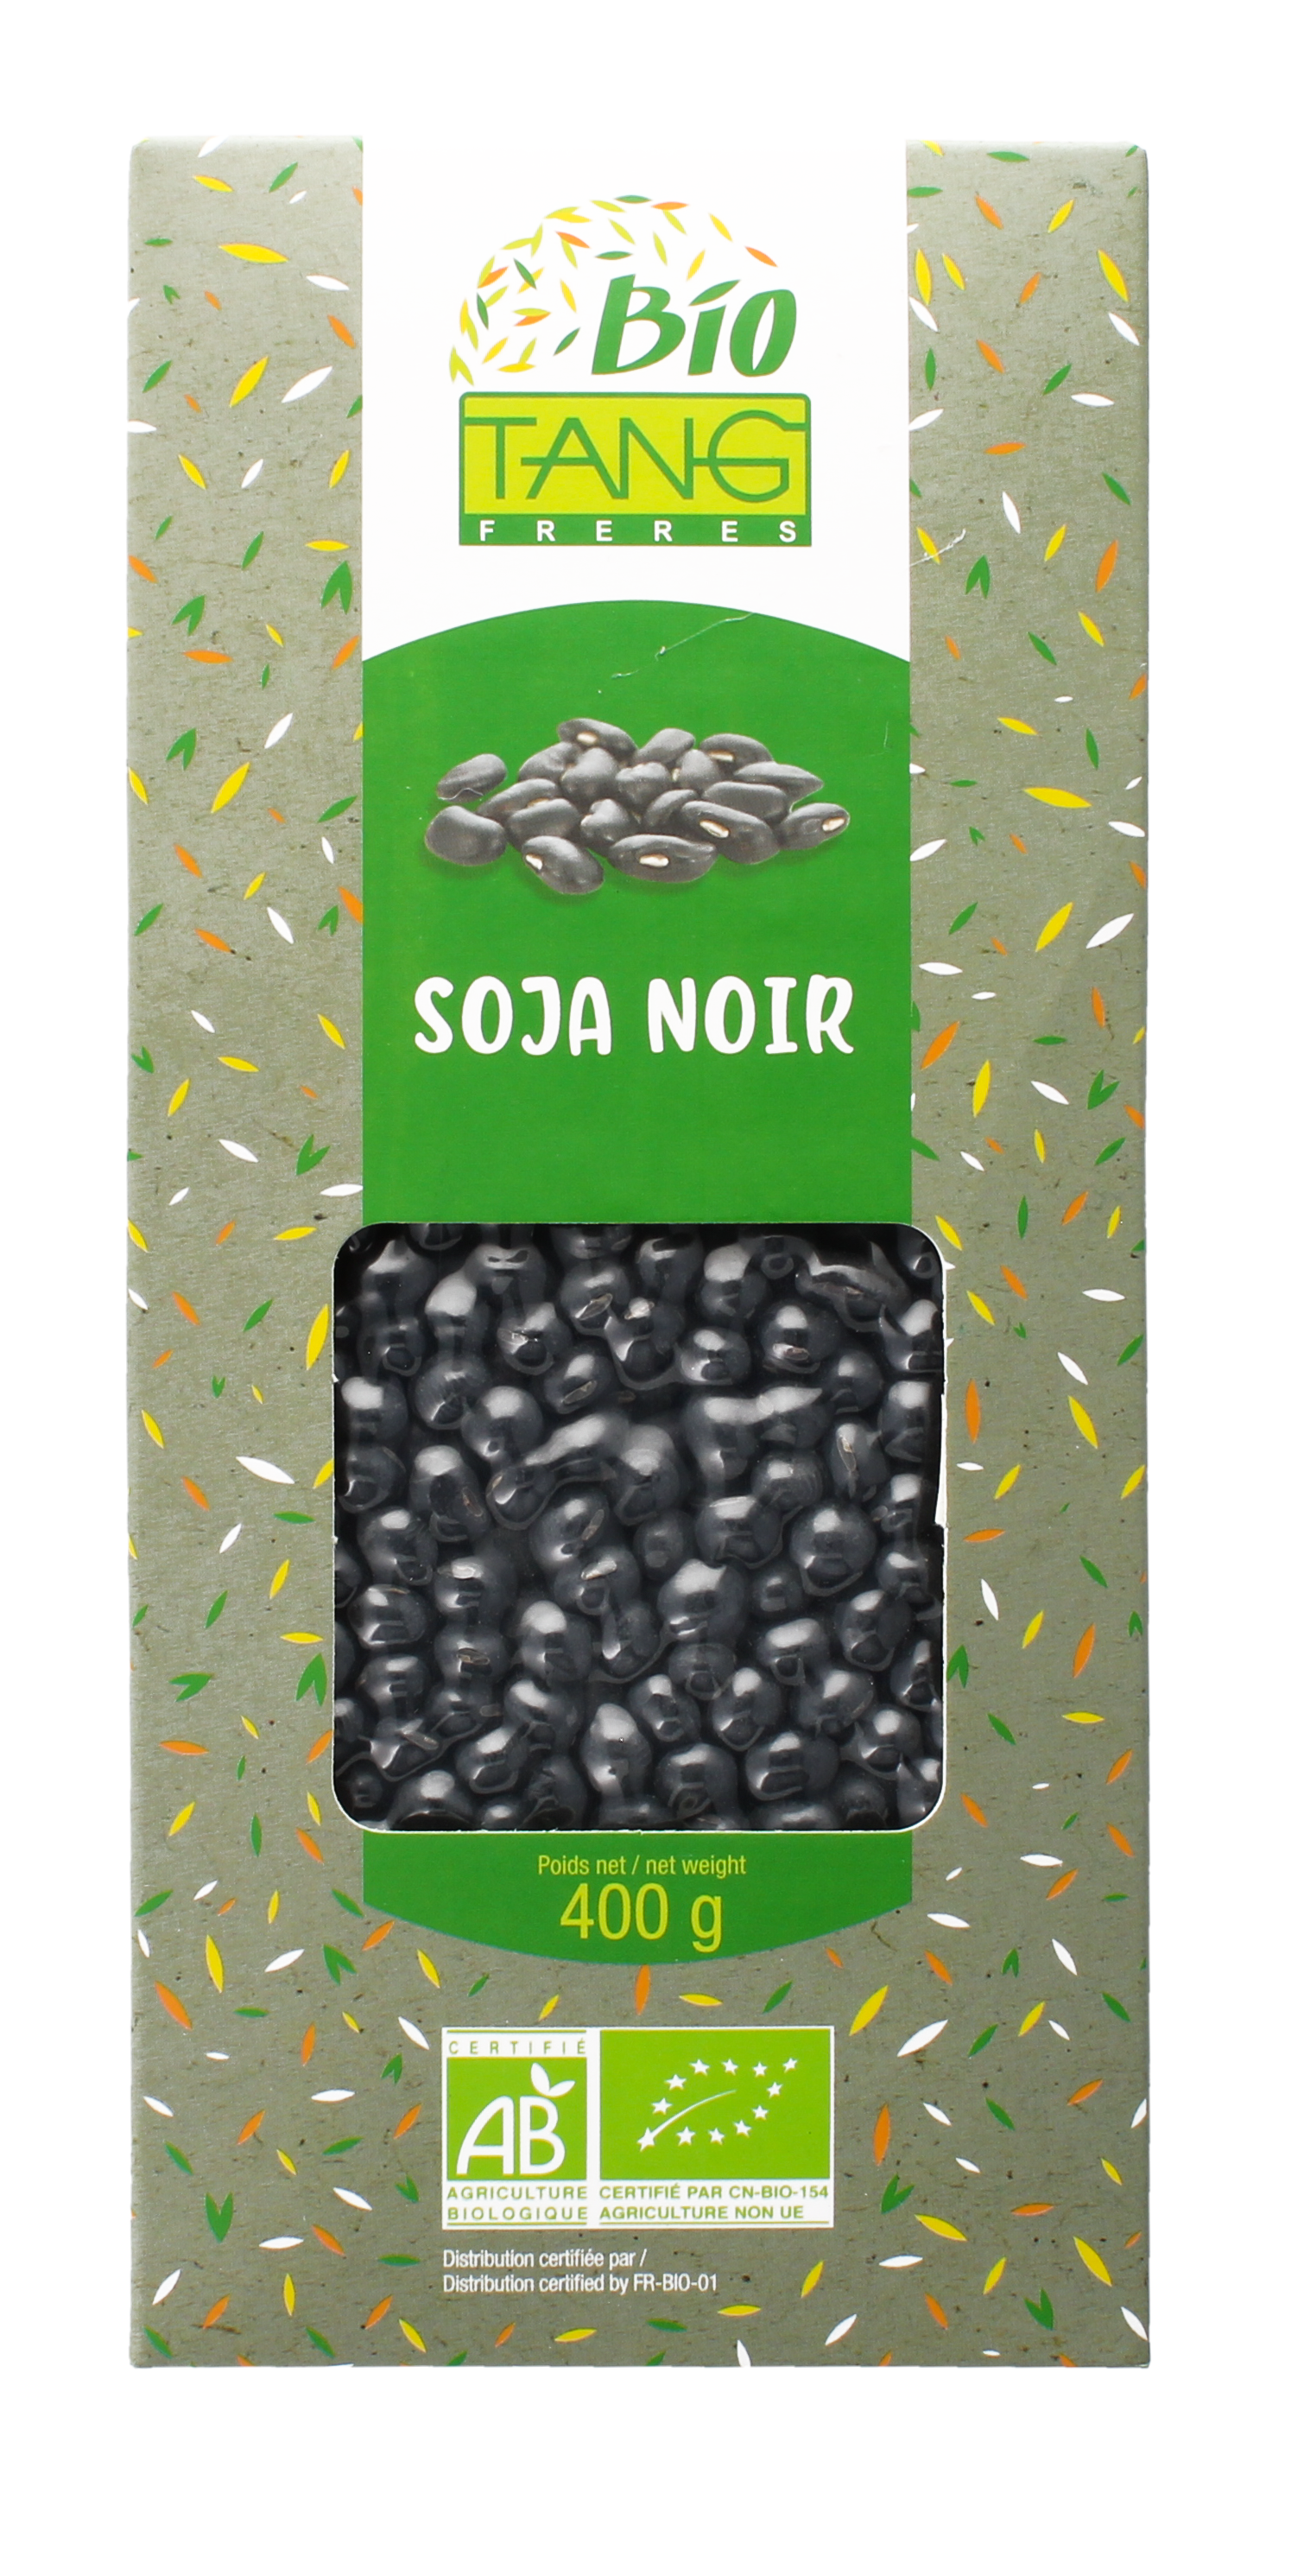 Soja noir (有机黑豆) (Générique) - Produits BIO, Graines - Tang Frères